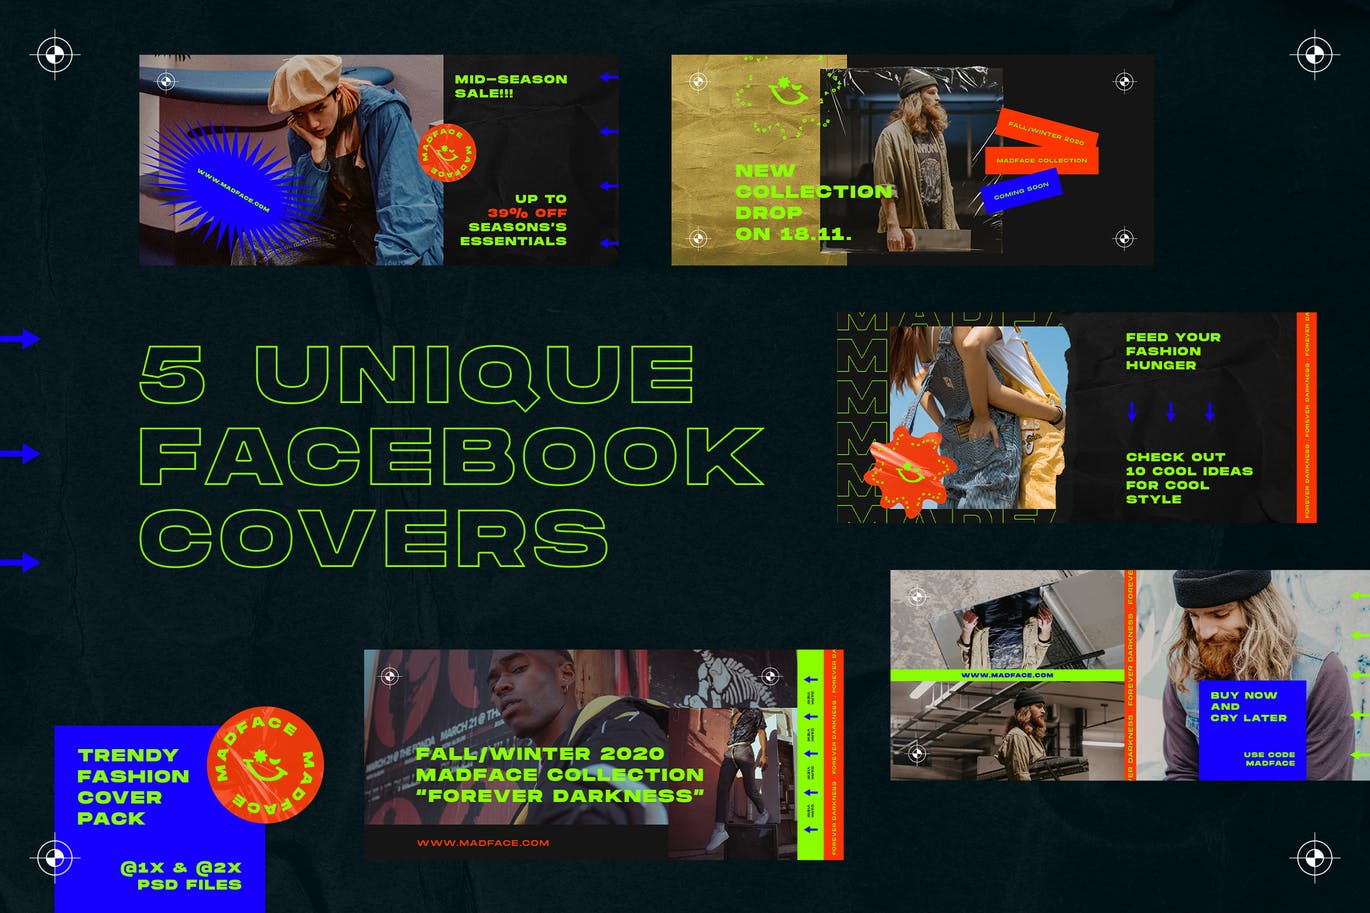 潮流时尚主题Facebook封面设计模板蚂蚁素材精选 Fashion Facebook Covers插图